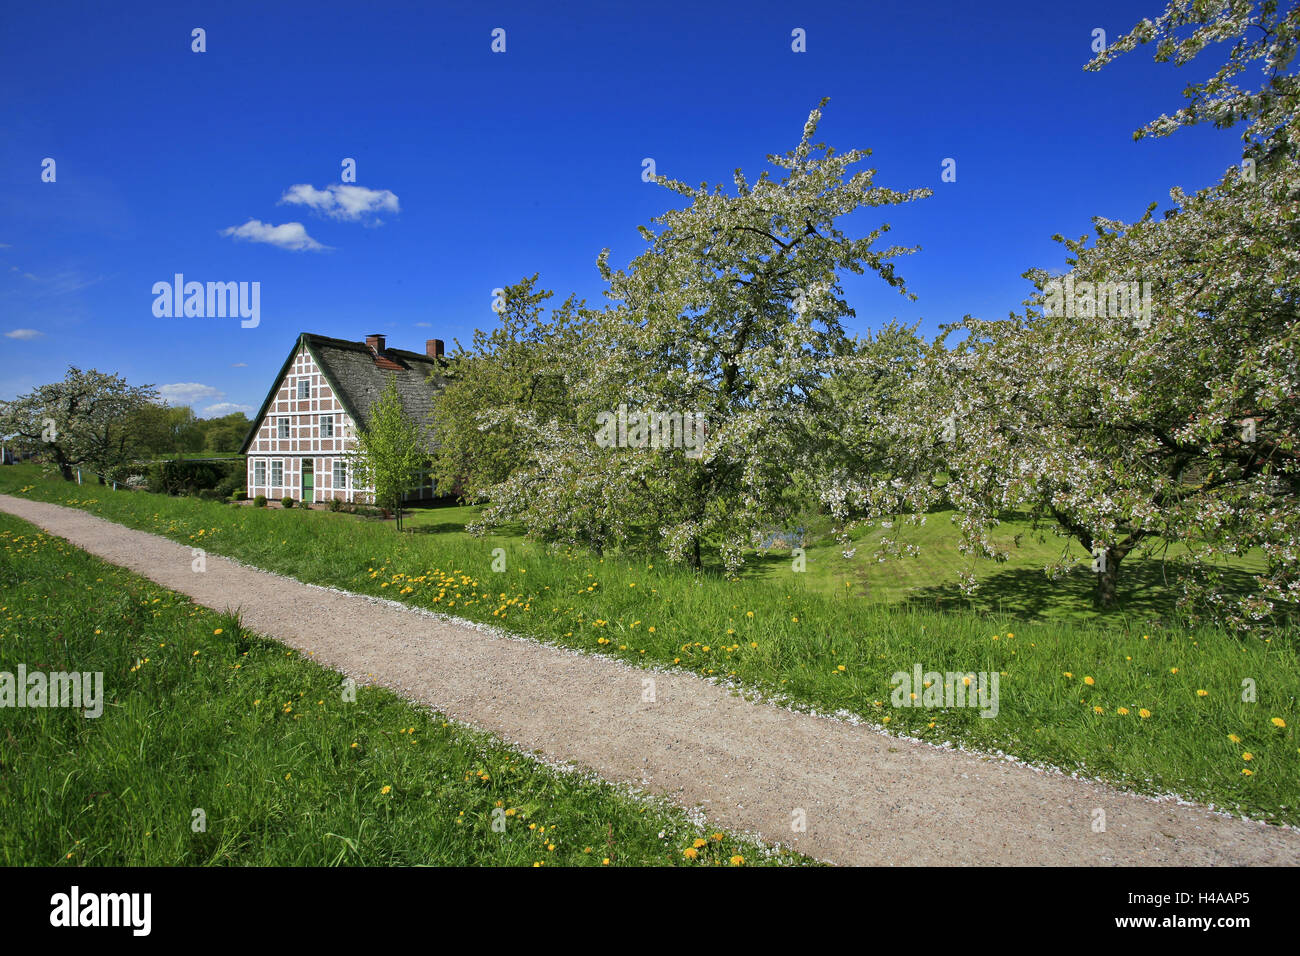 Obsthof zwischen blühenden Kirschbäumen Iat Estedeich in www.Linz.de, Altes Land in der Nähe von Hamburg, Stockfoto